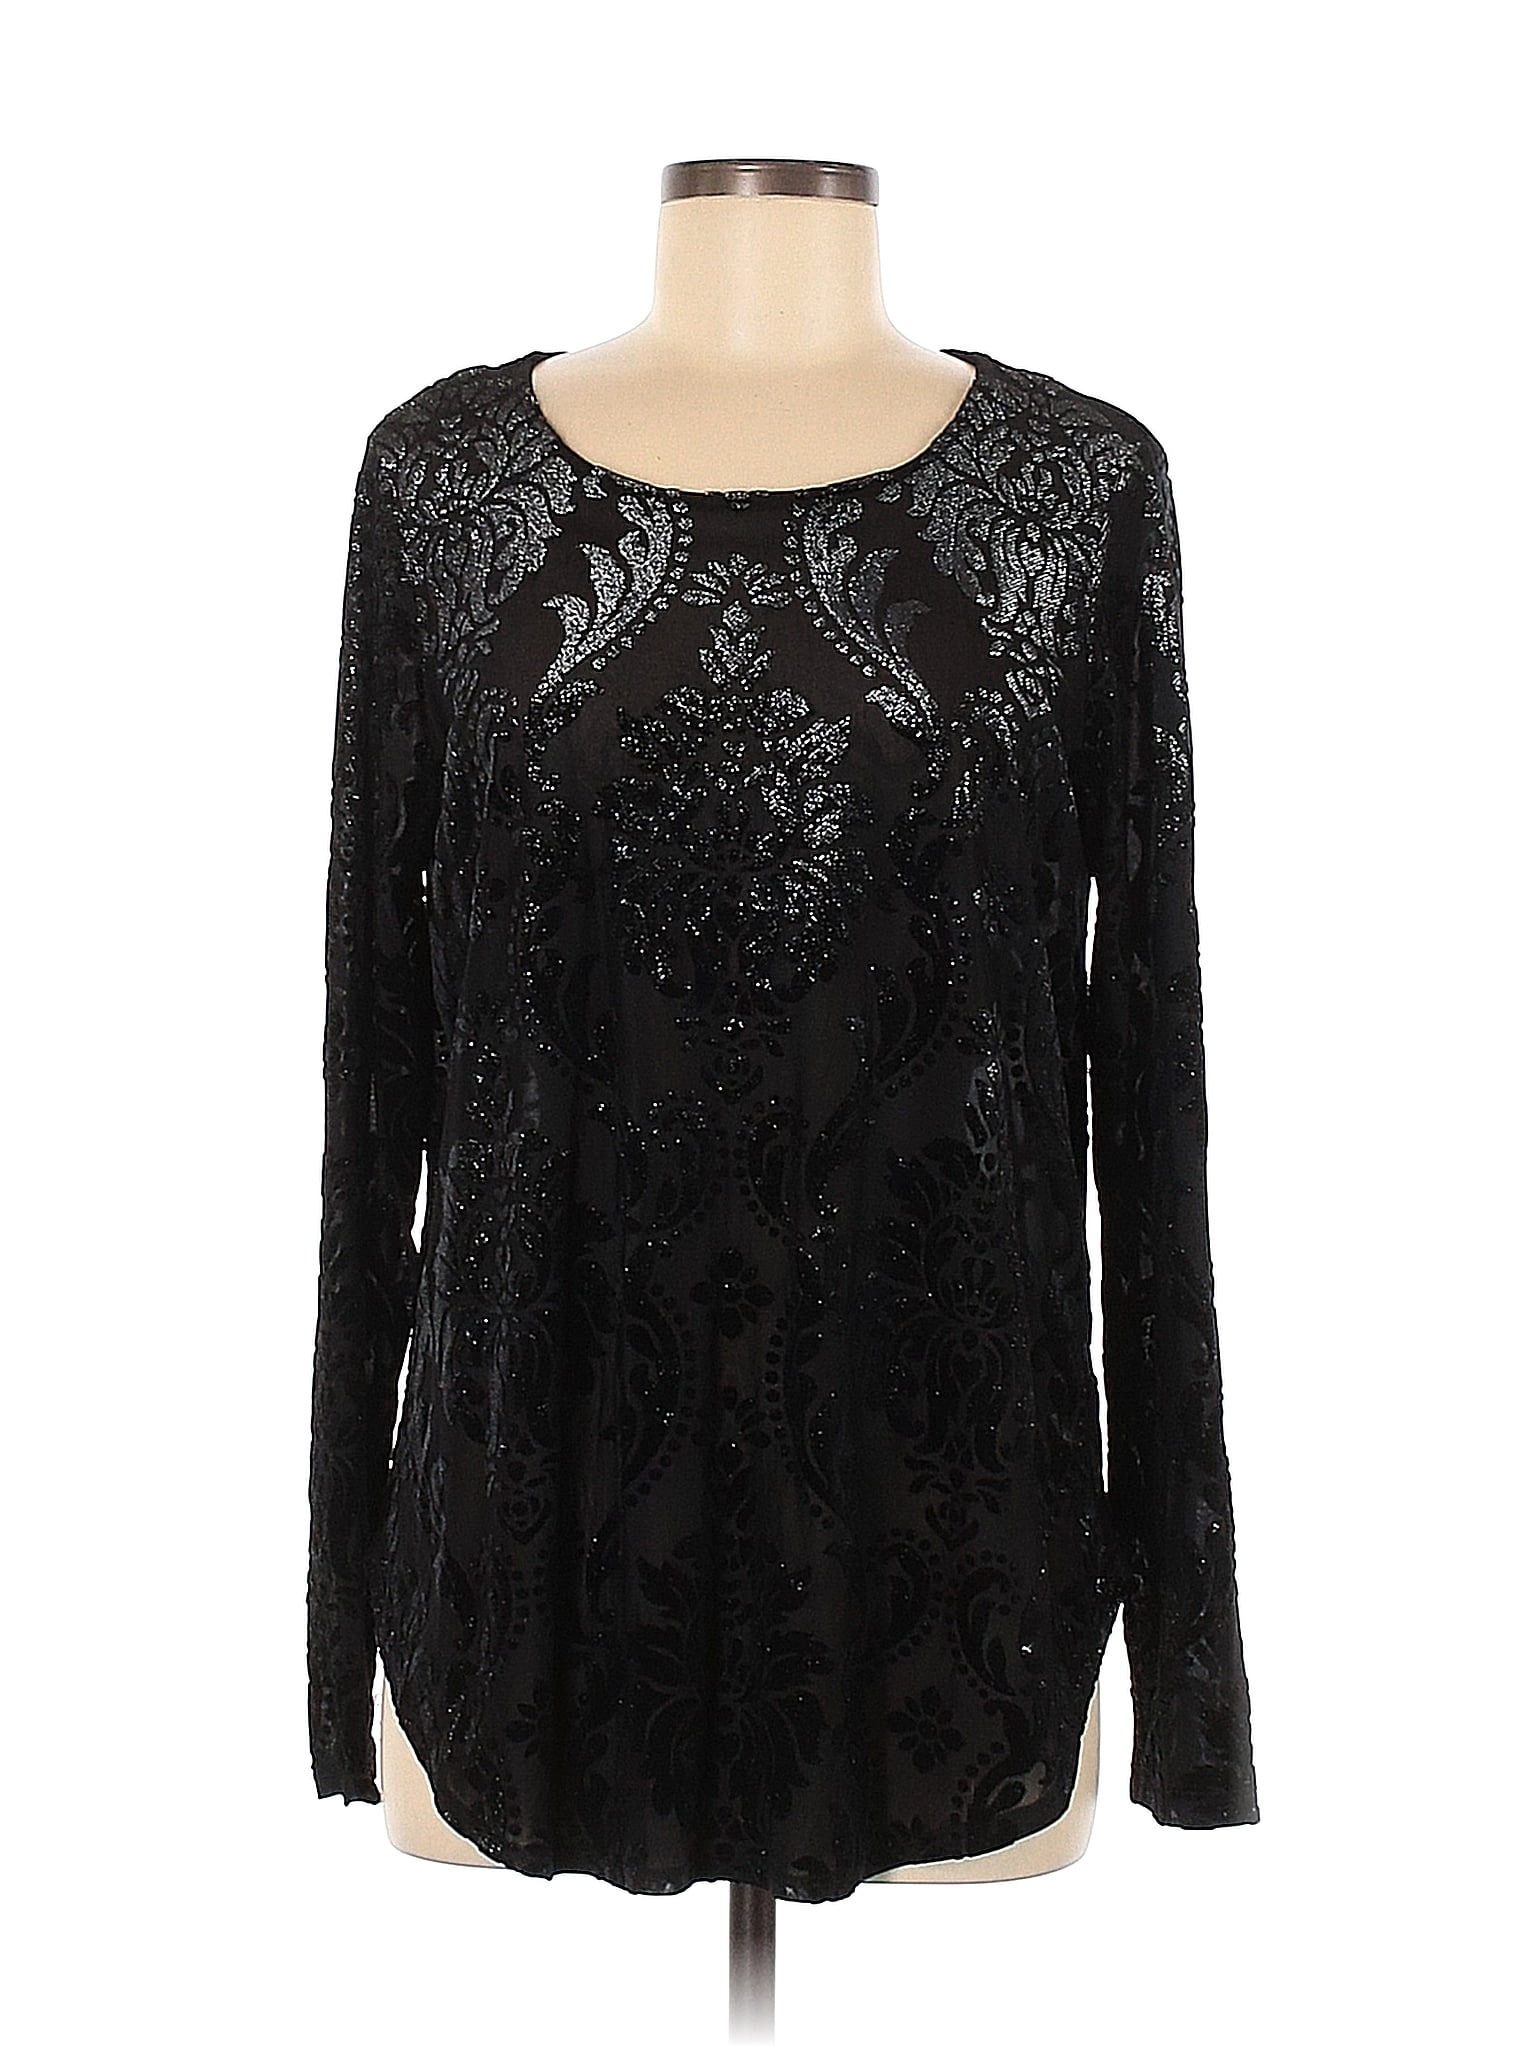 Karen Kane Floral Black Long Sleeve Blouse Size L - 77% off | thredUP